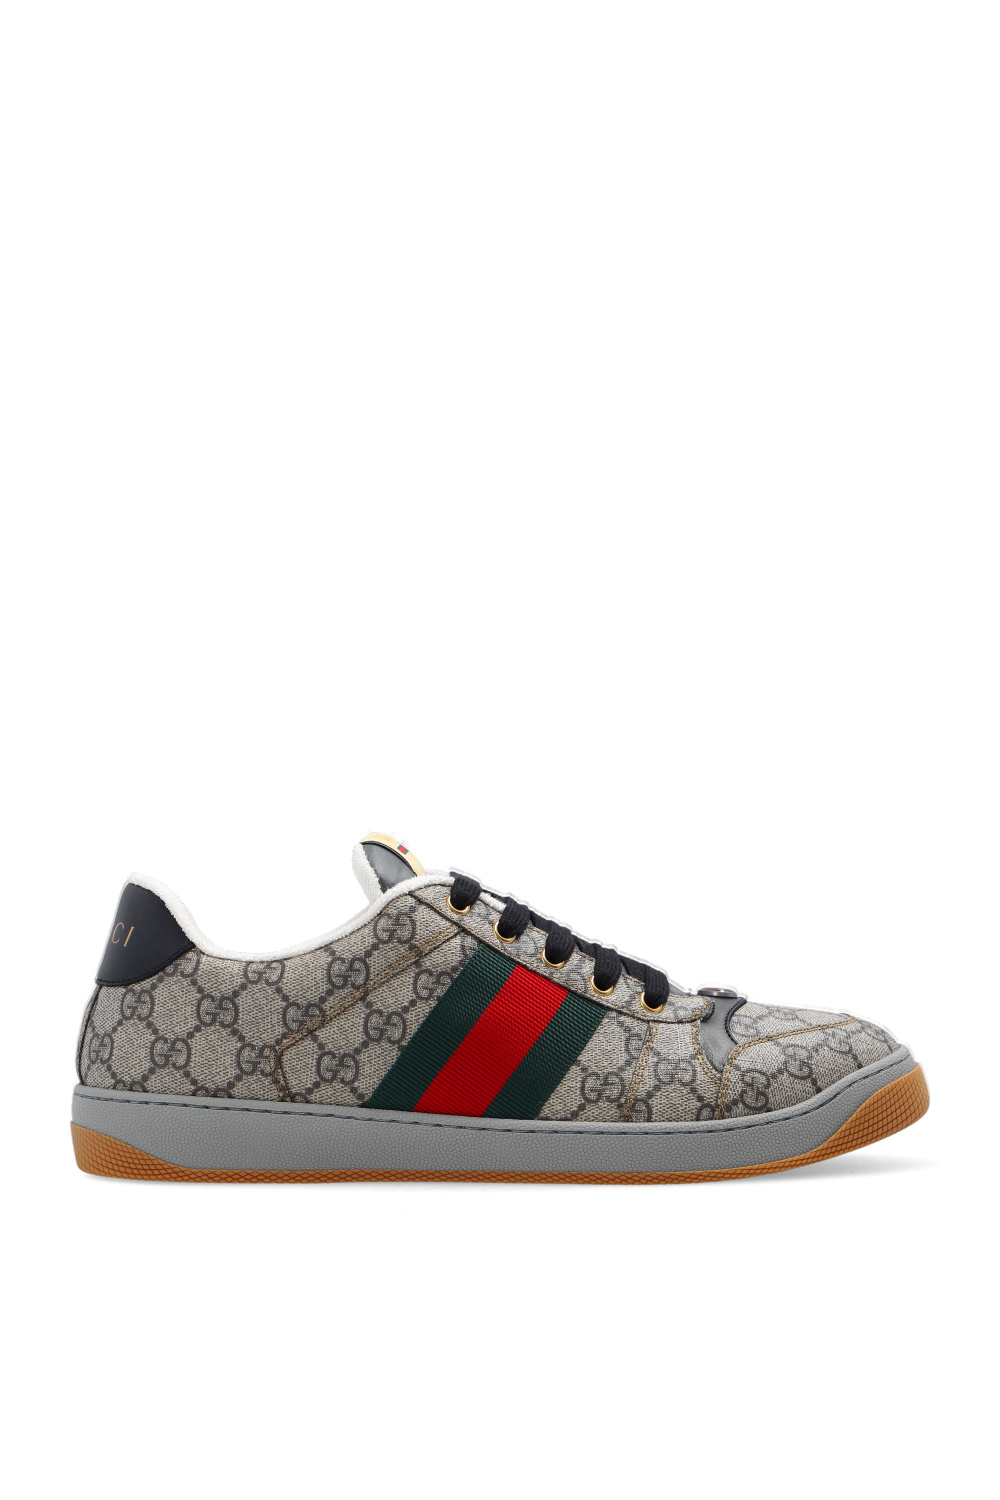 Gucci 'Screener' sneakers | Men's Shoes | Vitkac